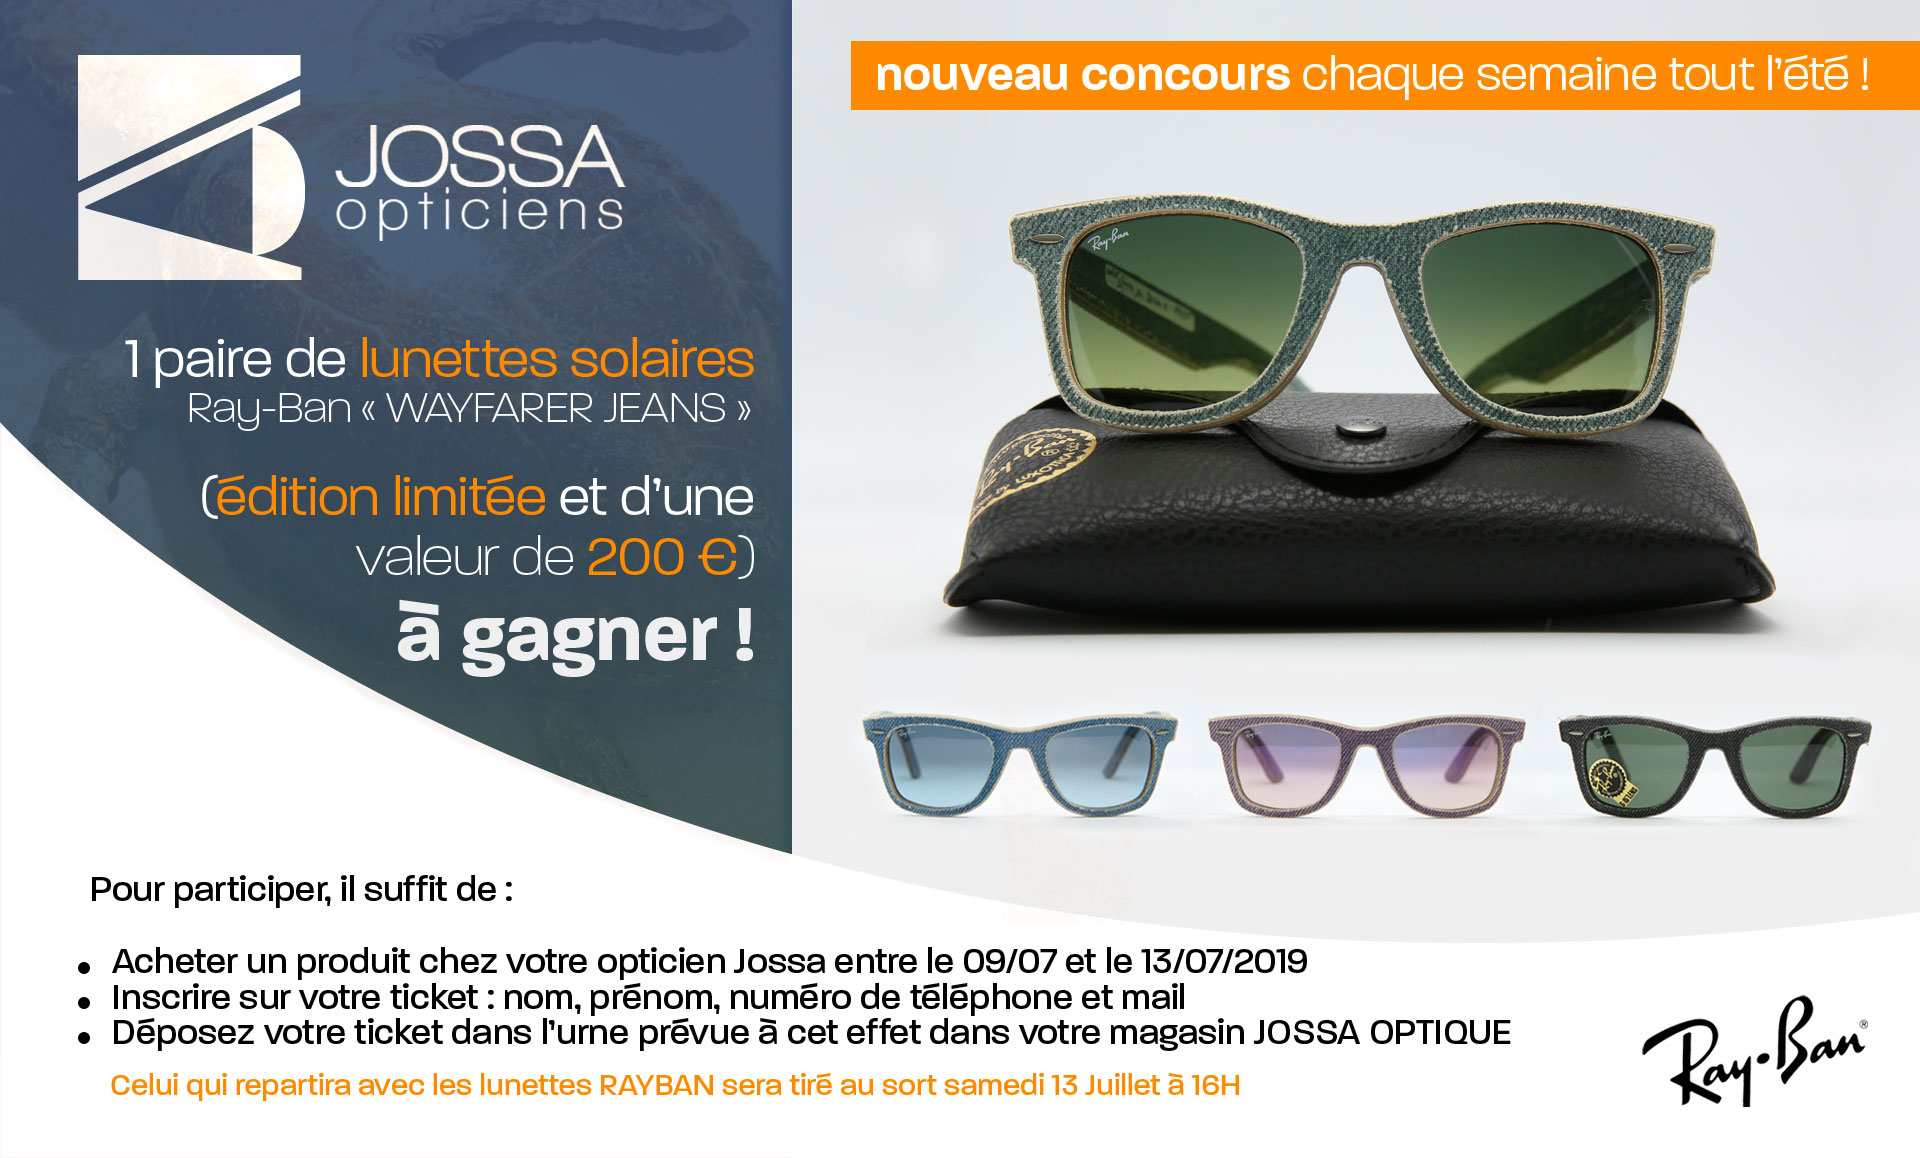 1 paire de lunettes solaires RAYBAN* « WAYFARER JEANS » (édition limitée et d’une valeur de 200 €) à gagner ! 